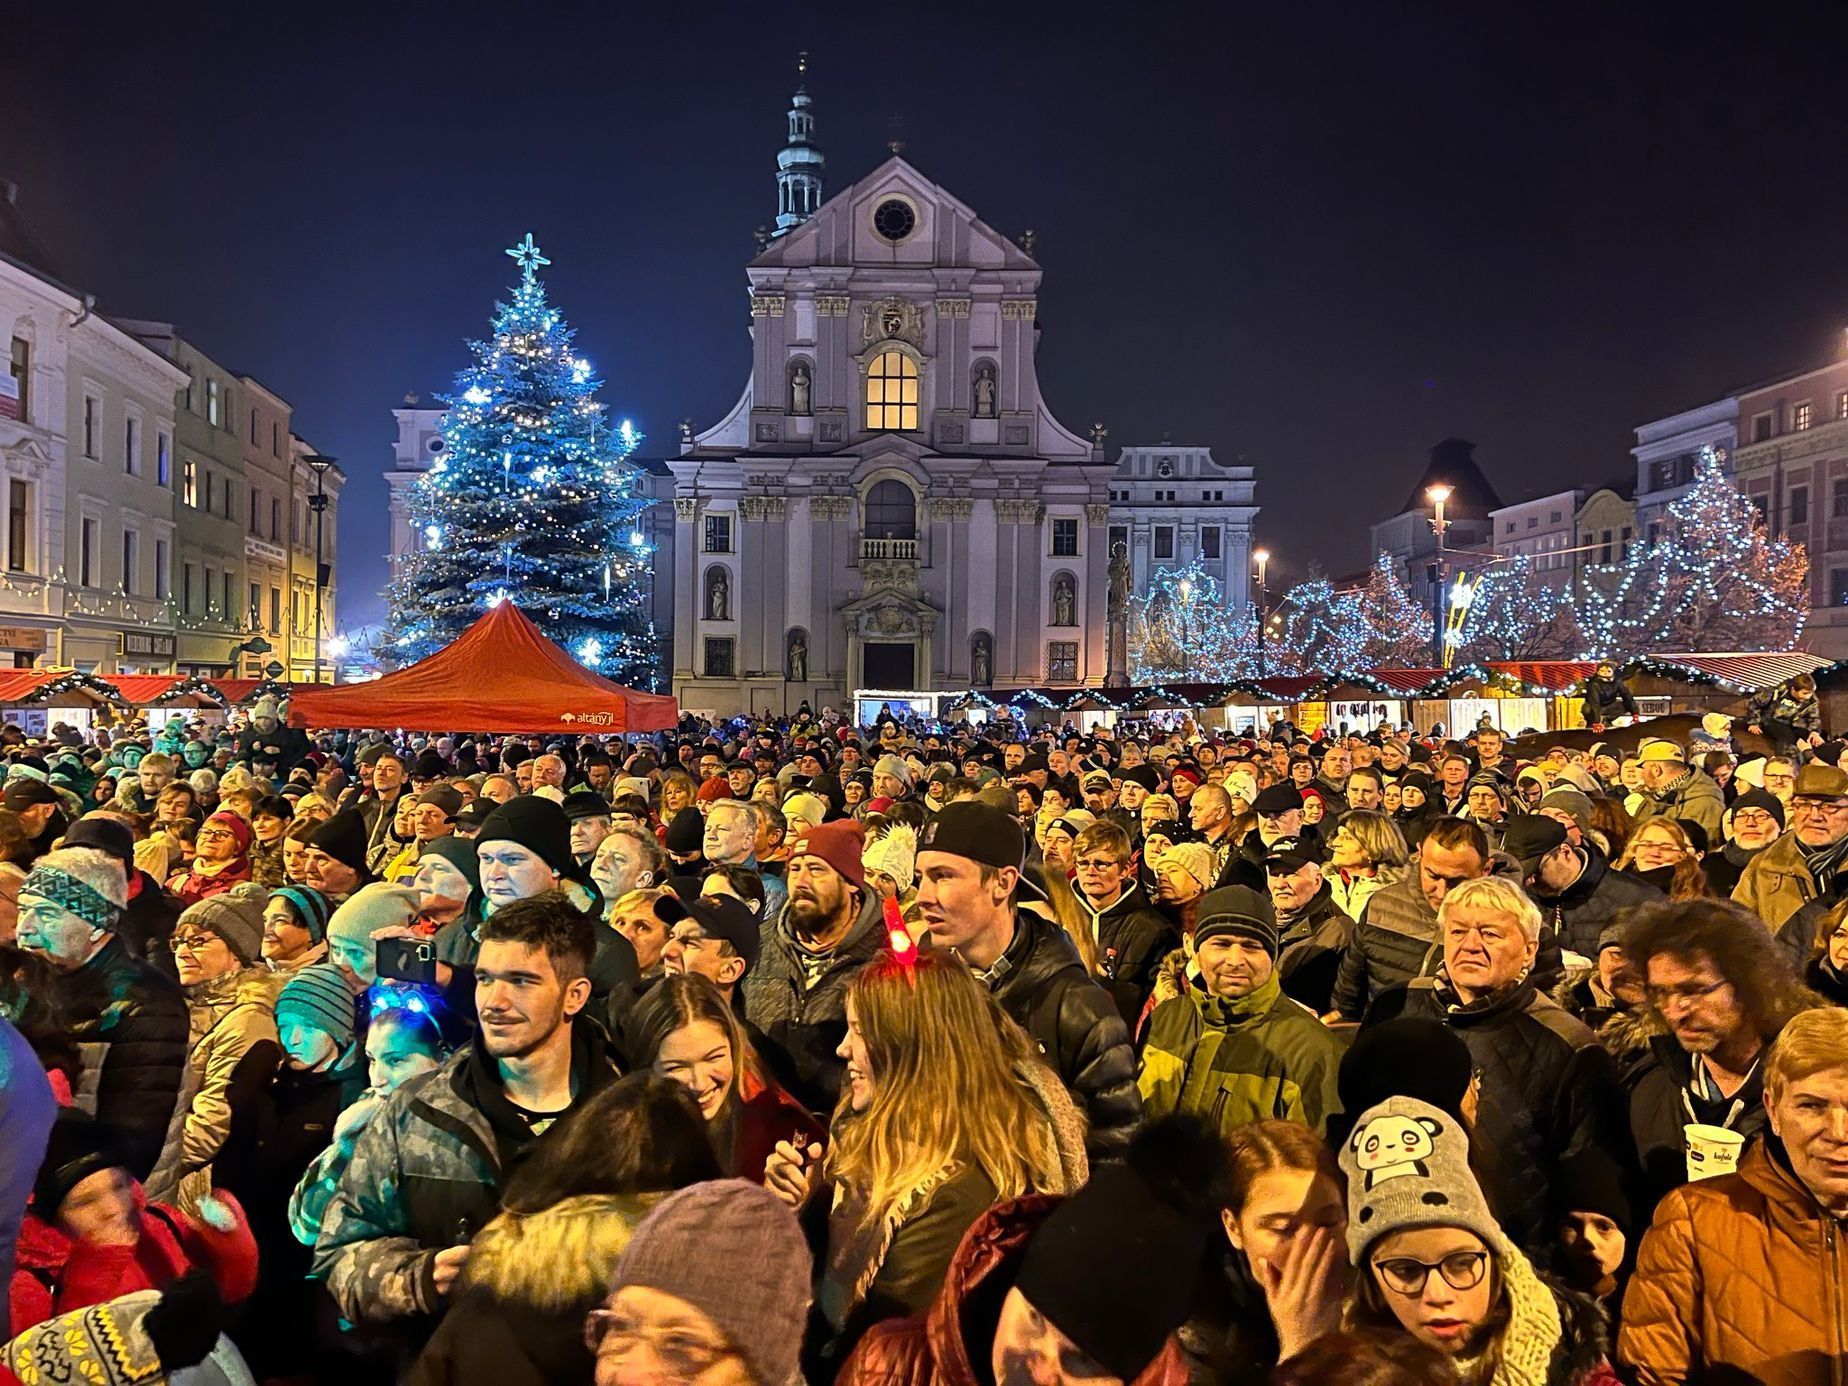 Vánoční stromky, česká města, 2022